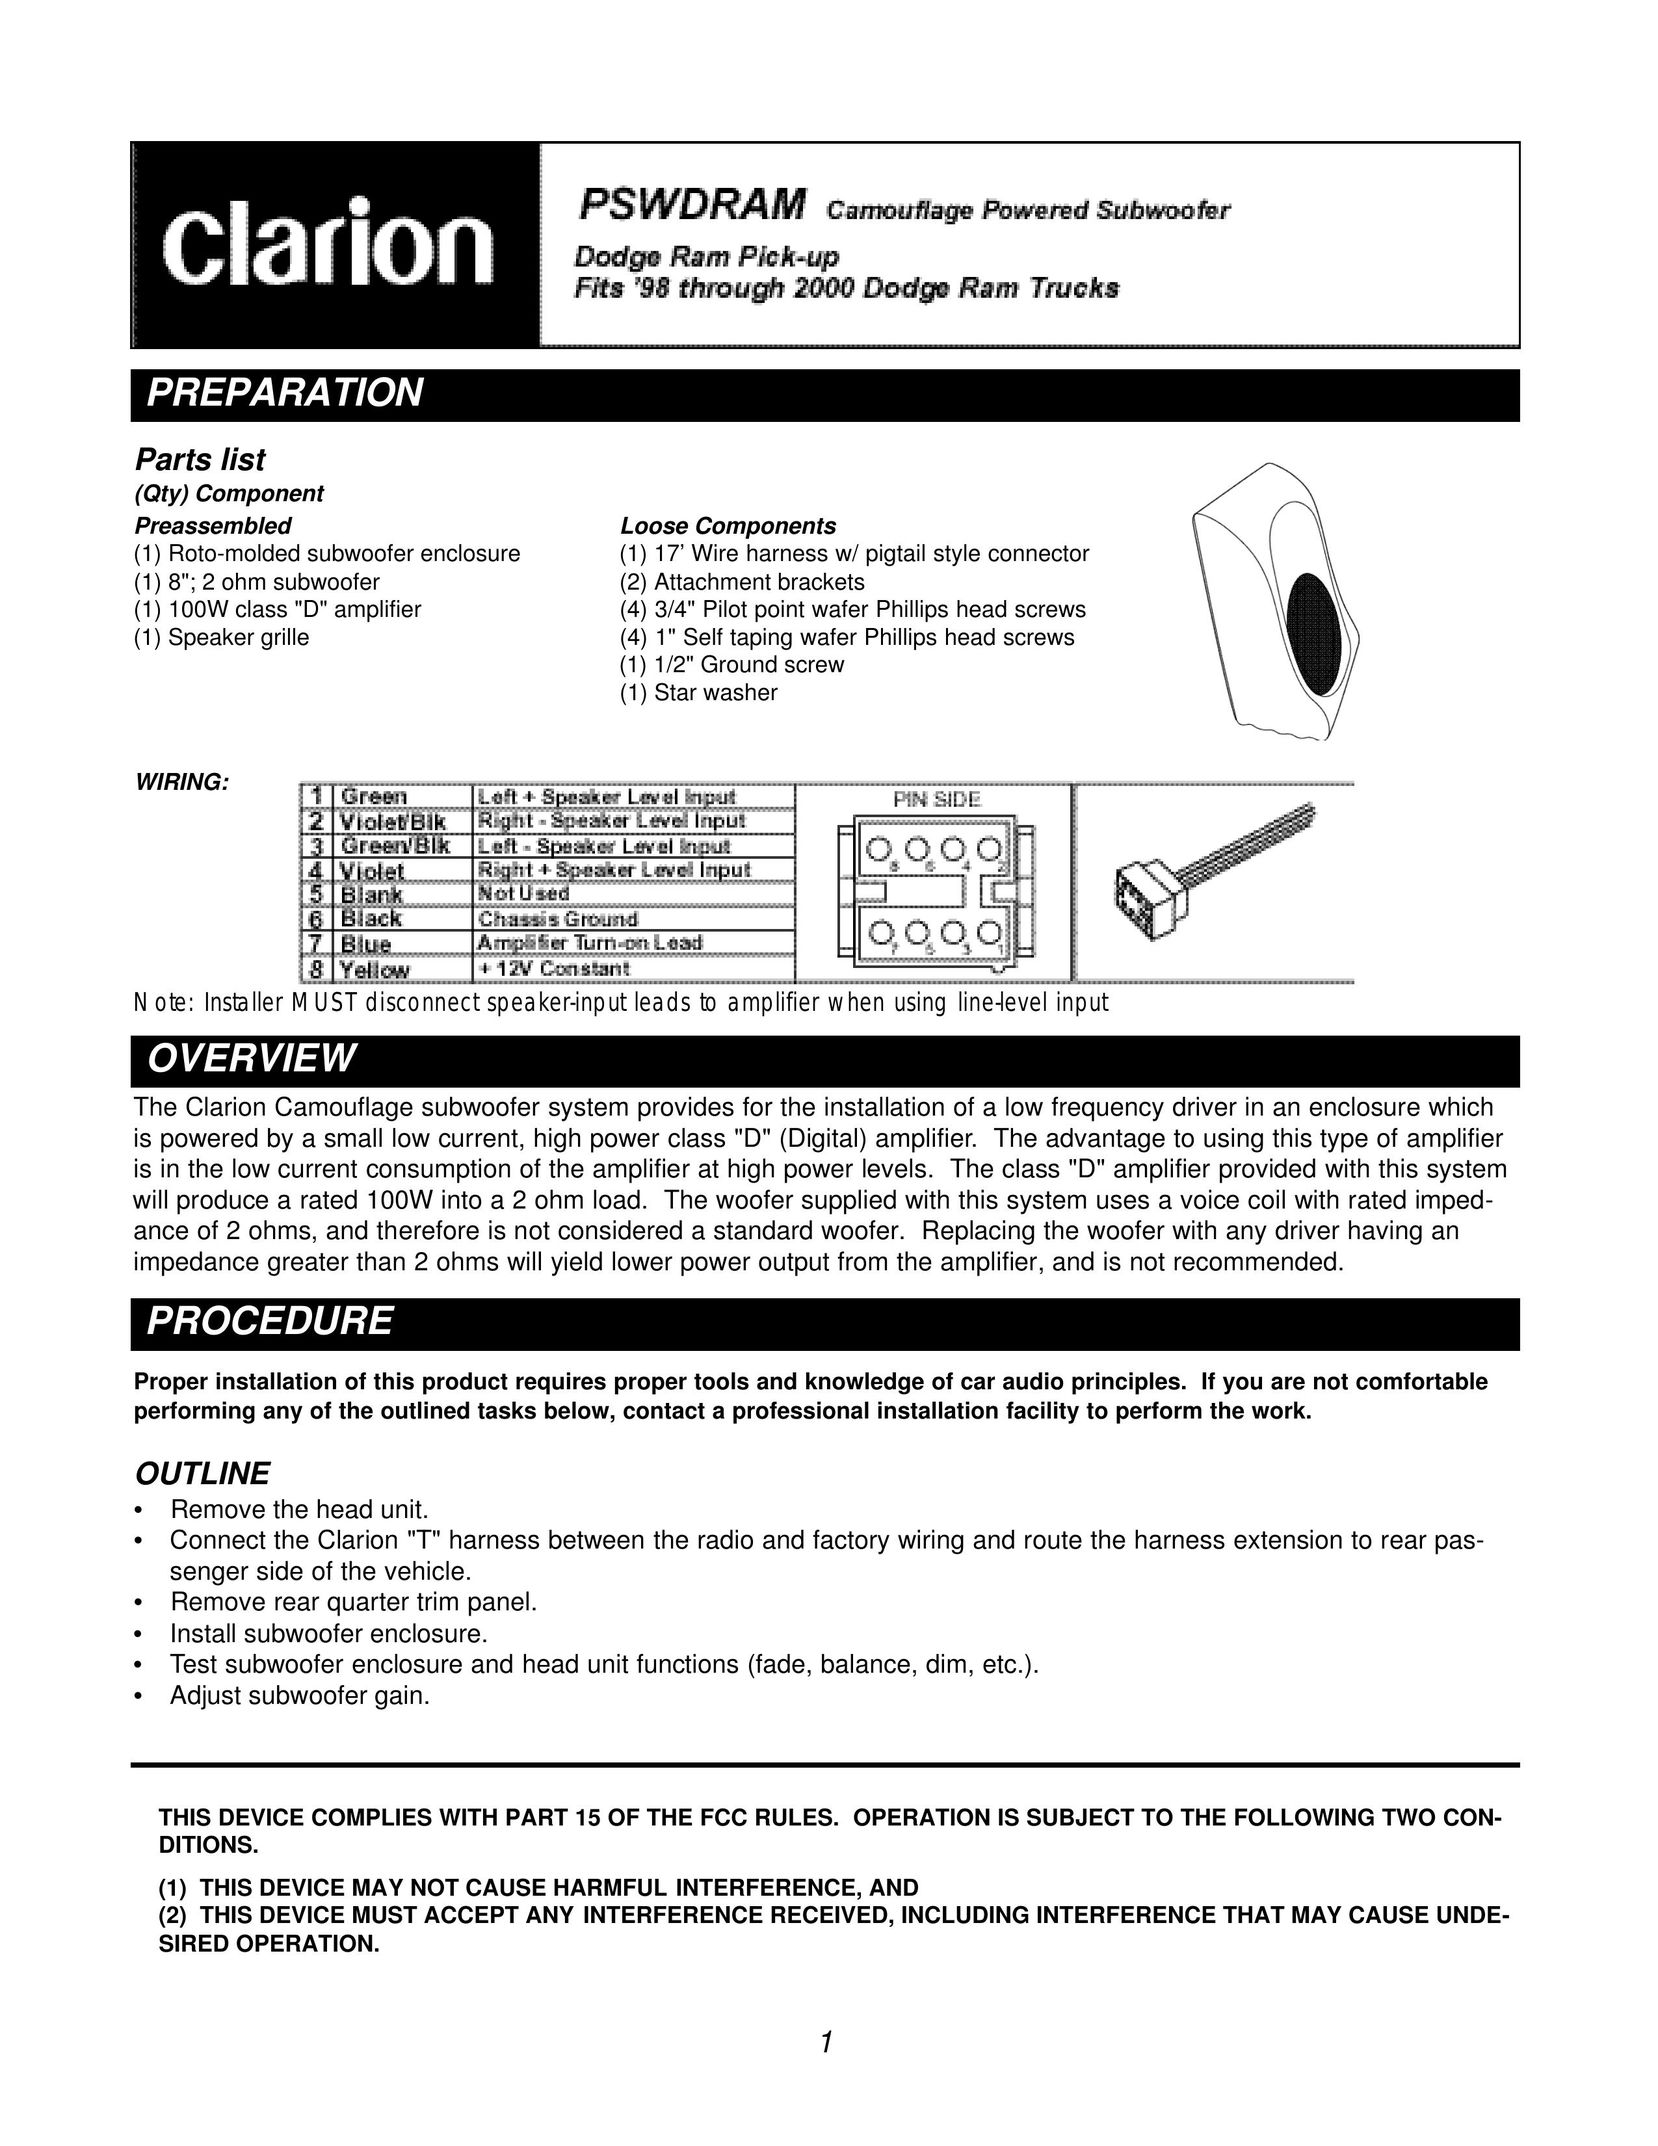 Clarion PSWDRAM Speaker User Manual